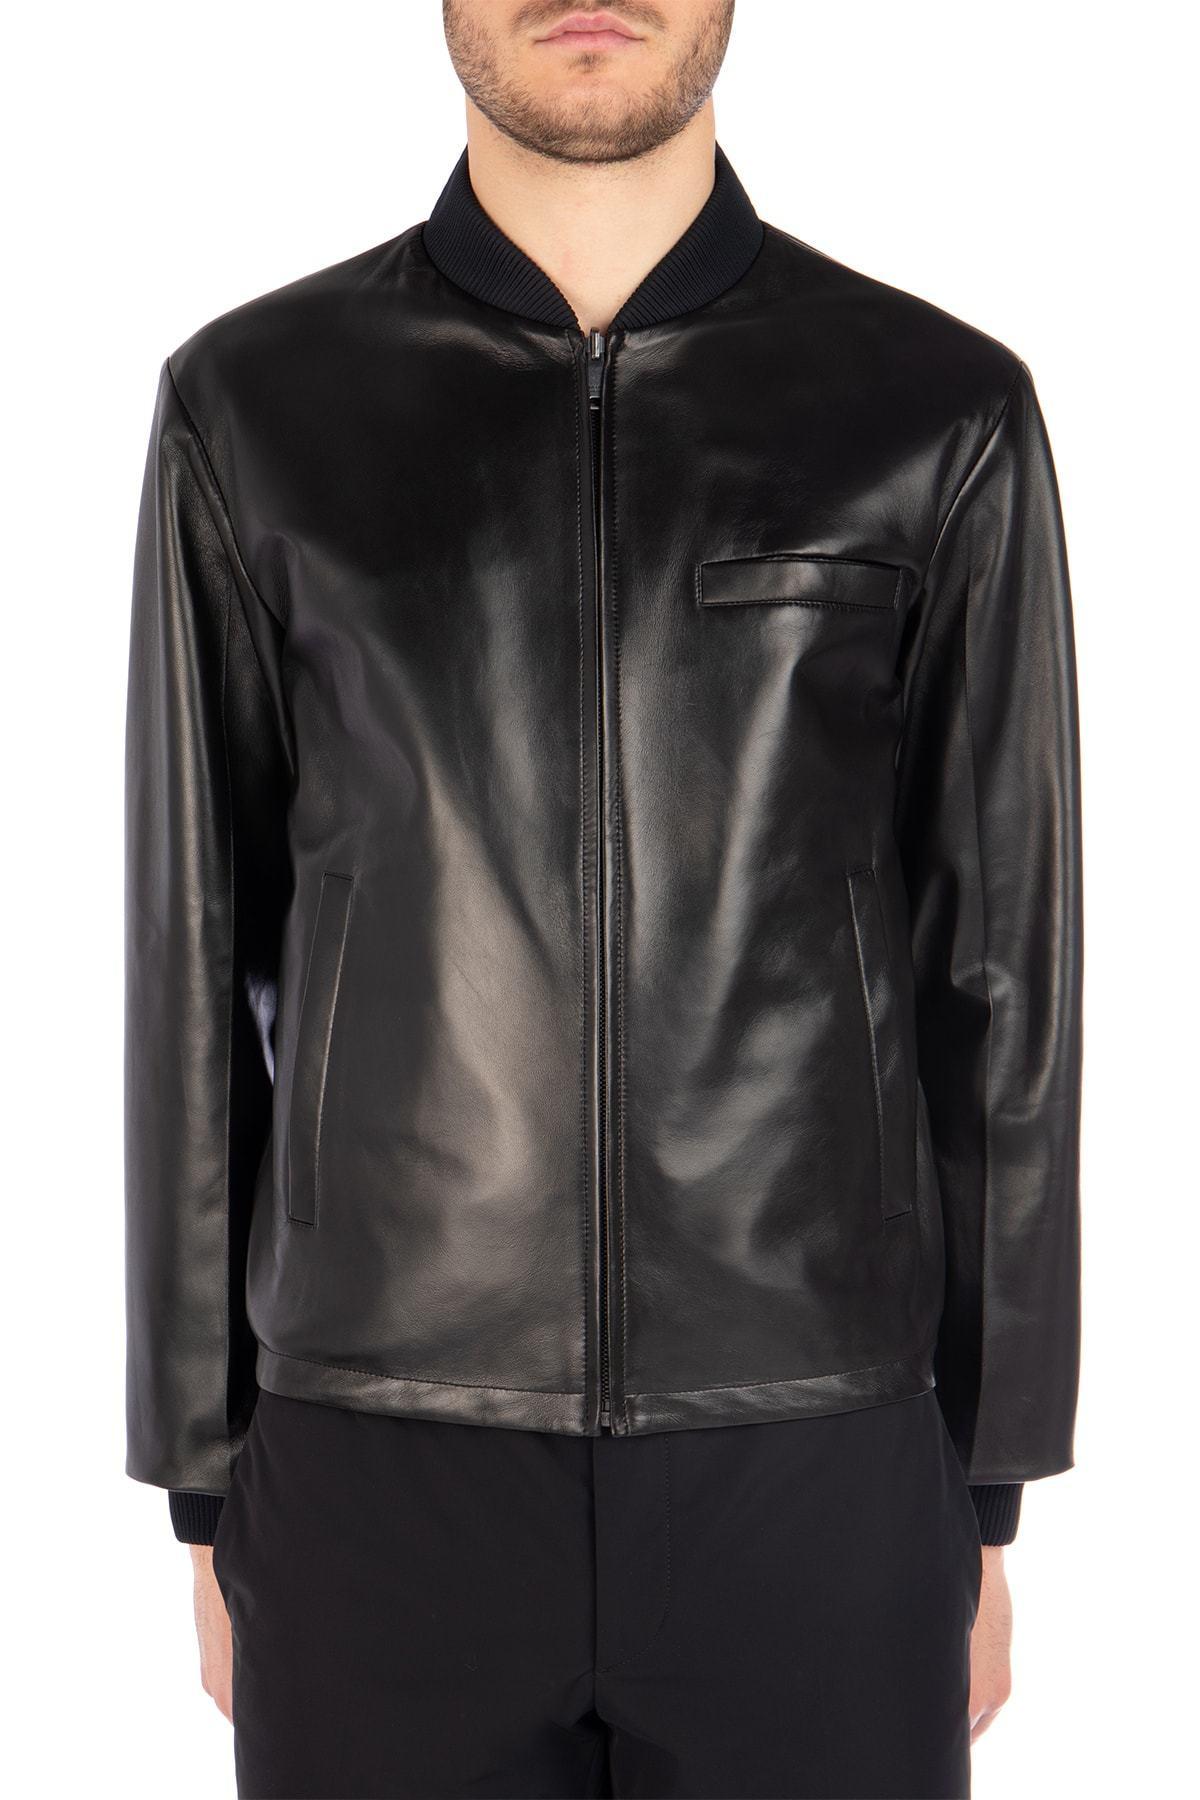 Prada Leather Reversible Bomber Jacket in Black for Men - Lyst